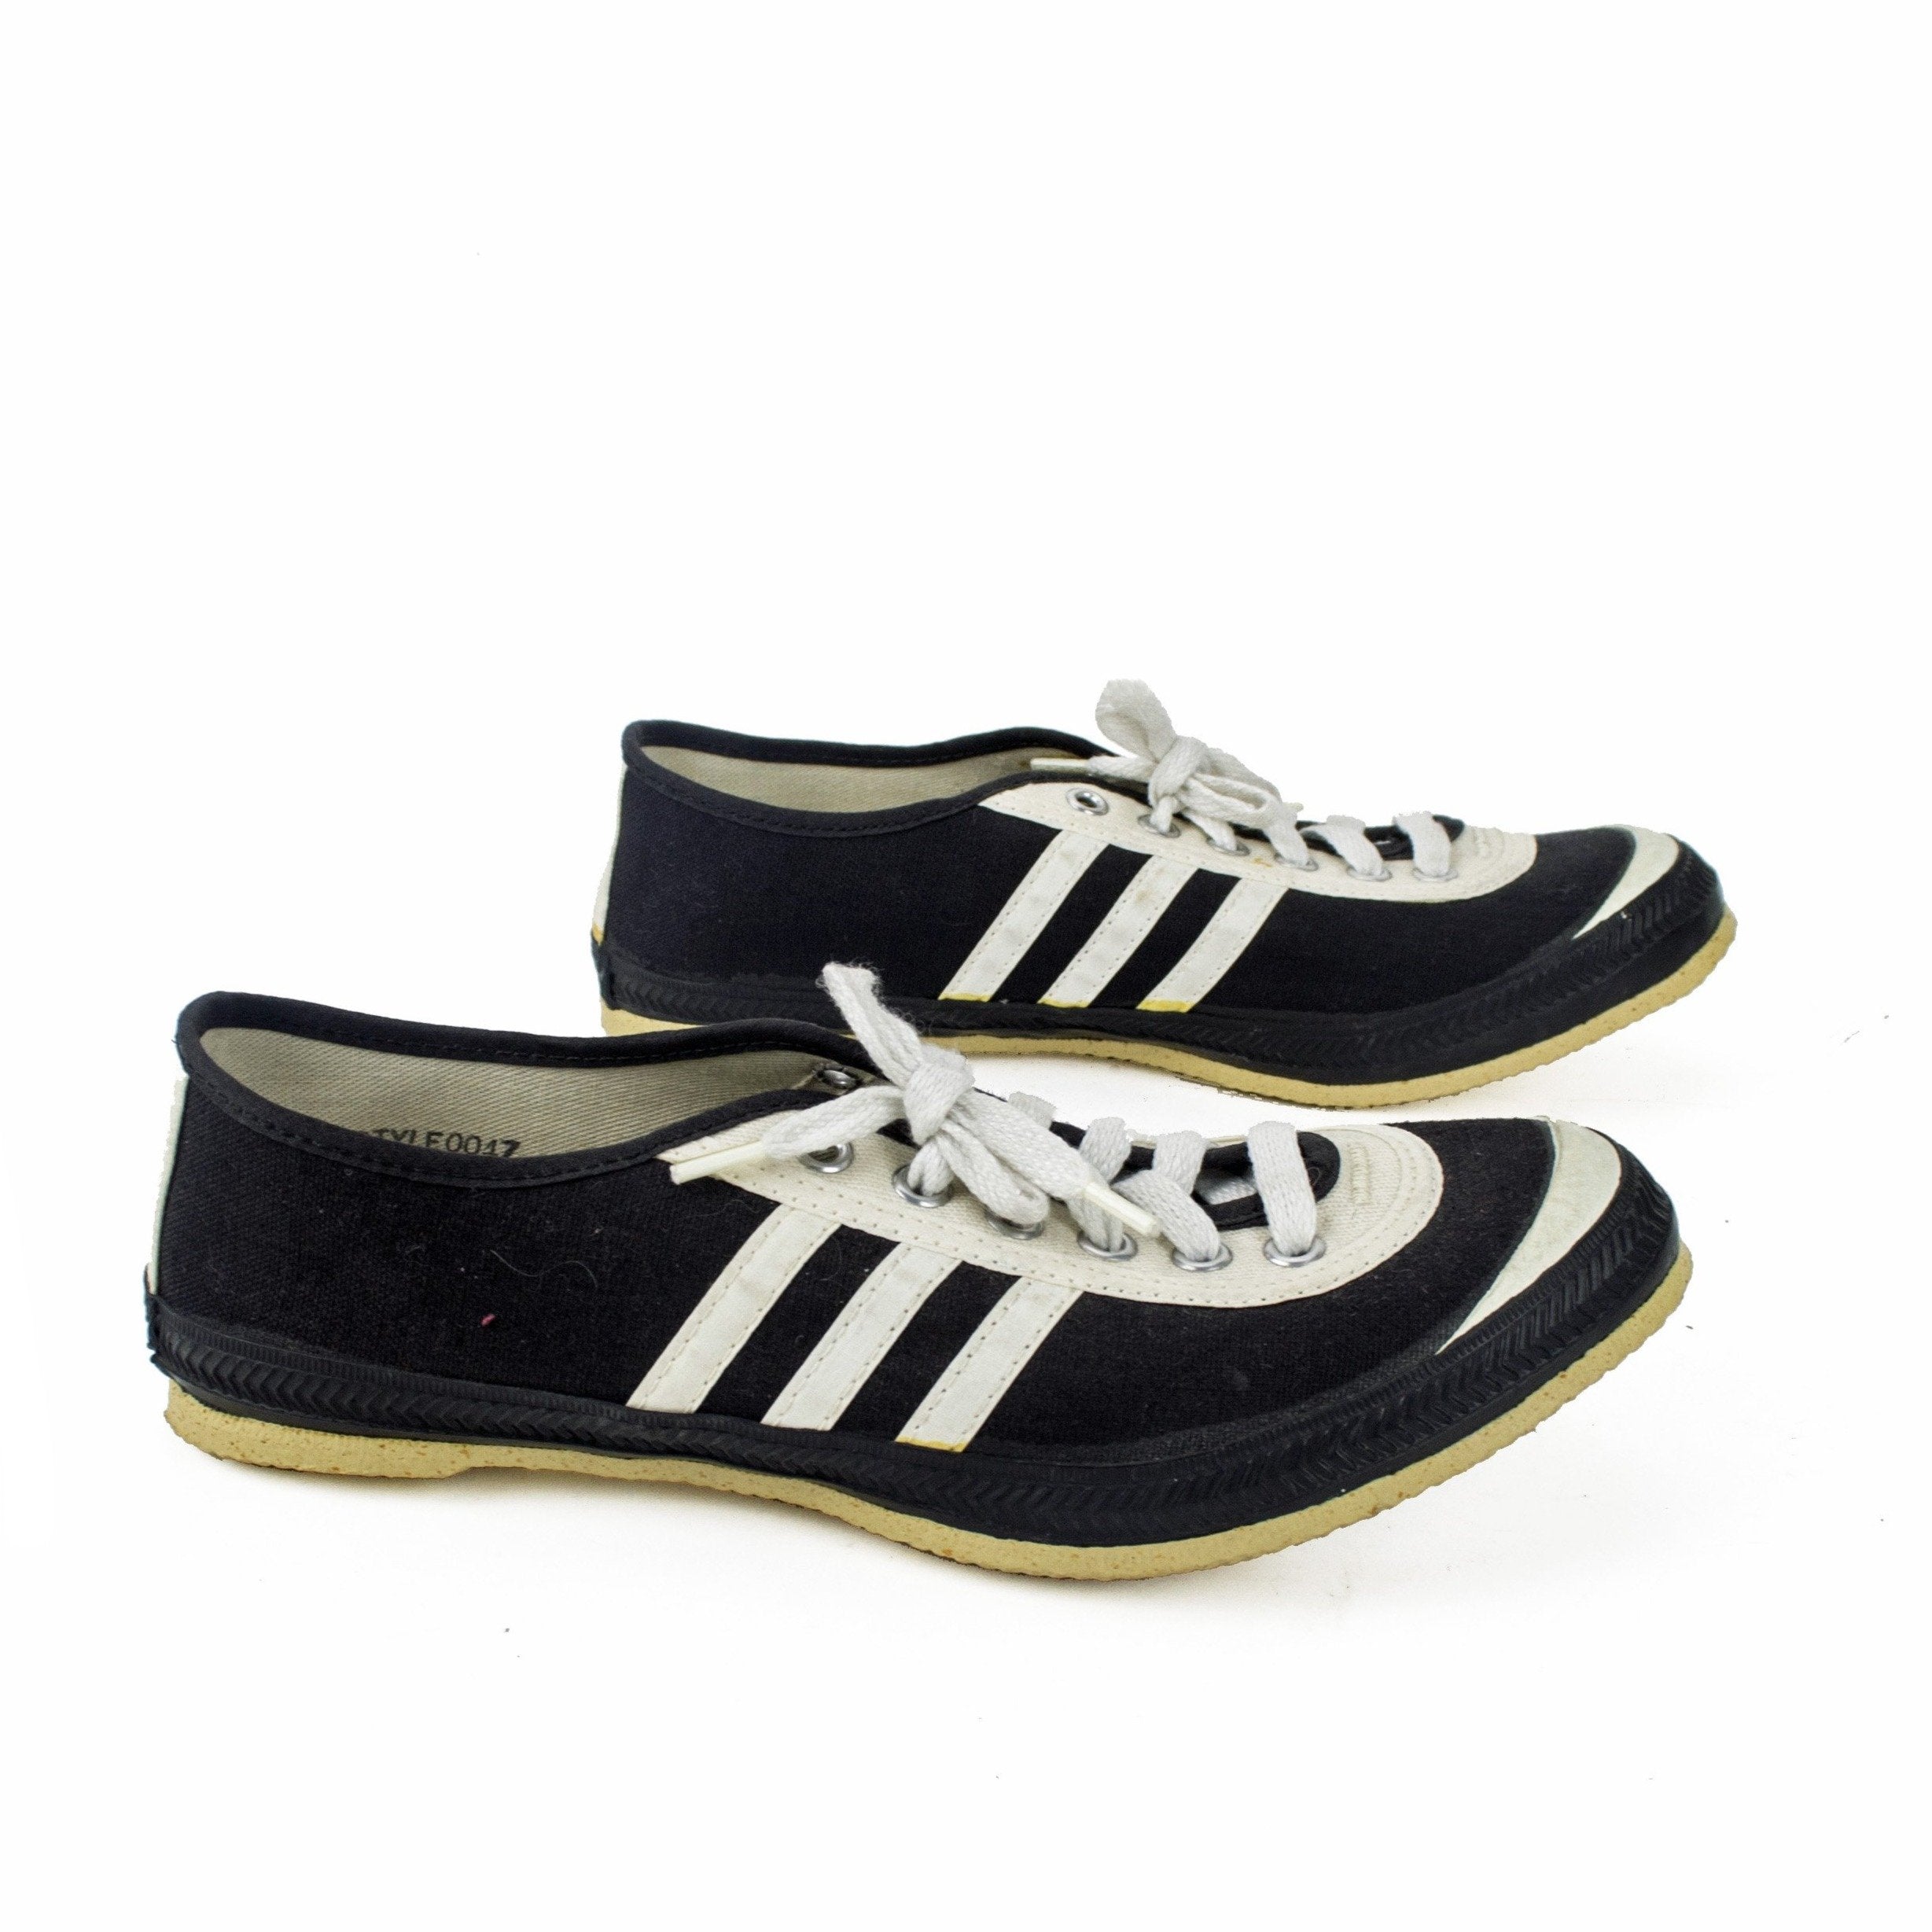 via-vtg-vox-pop-rare-vintage-nos-1960s-flash-dash-turned-toe-track-shoes-sneakers-14718490476630.jpg